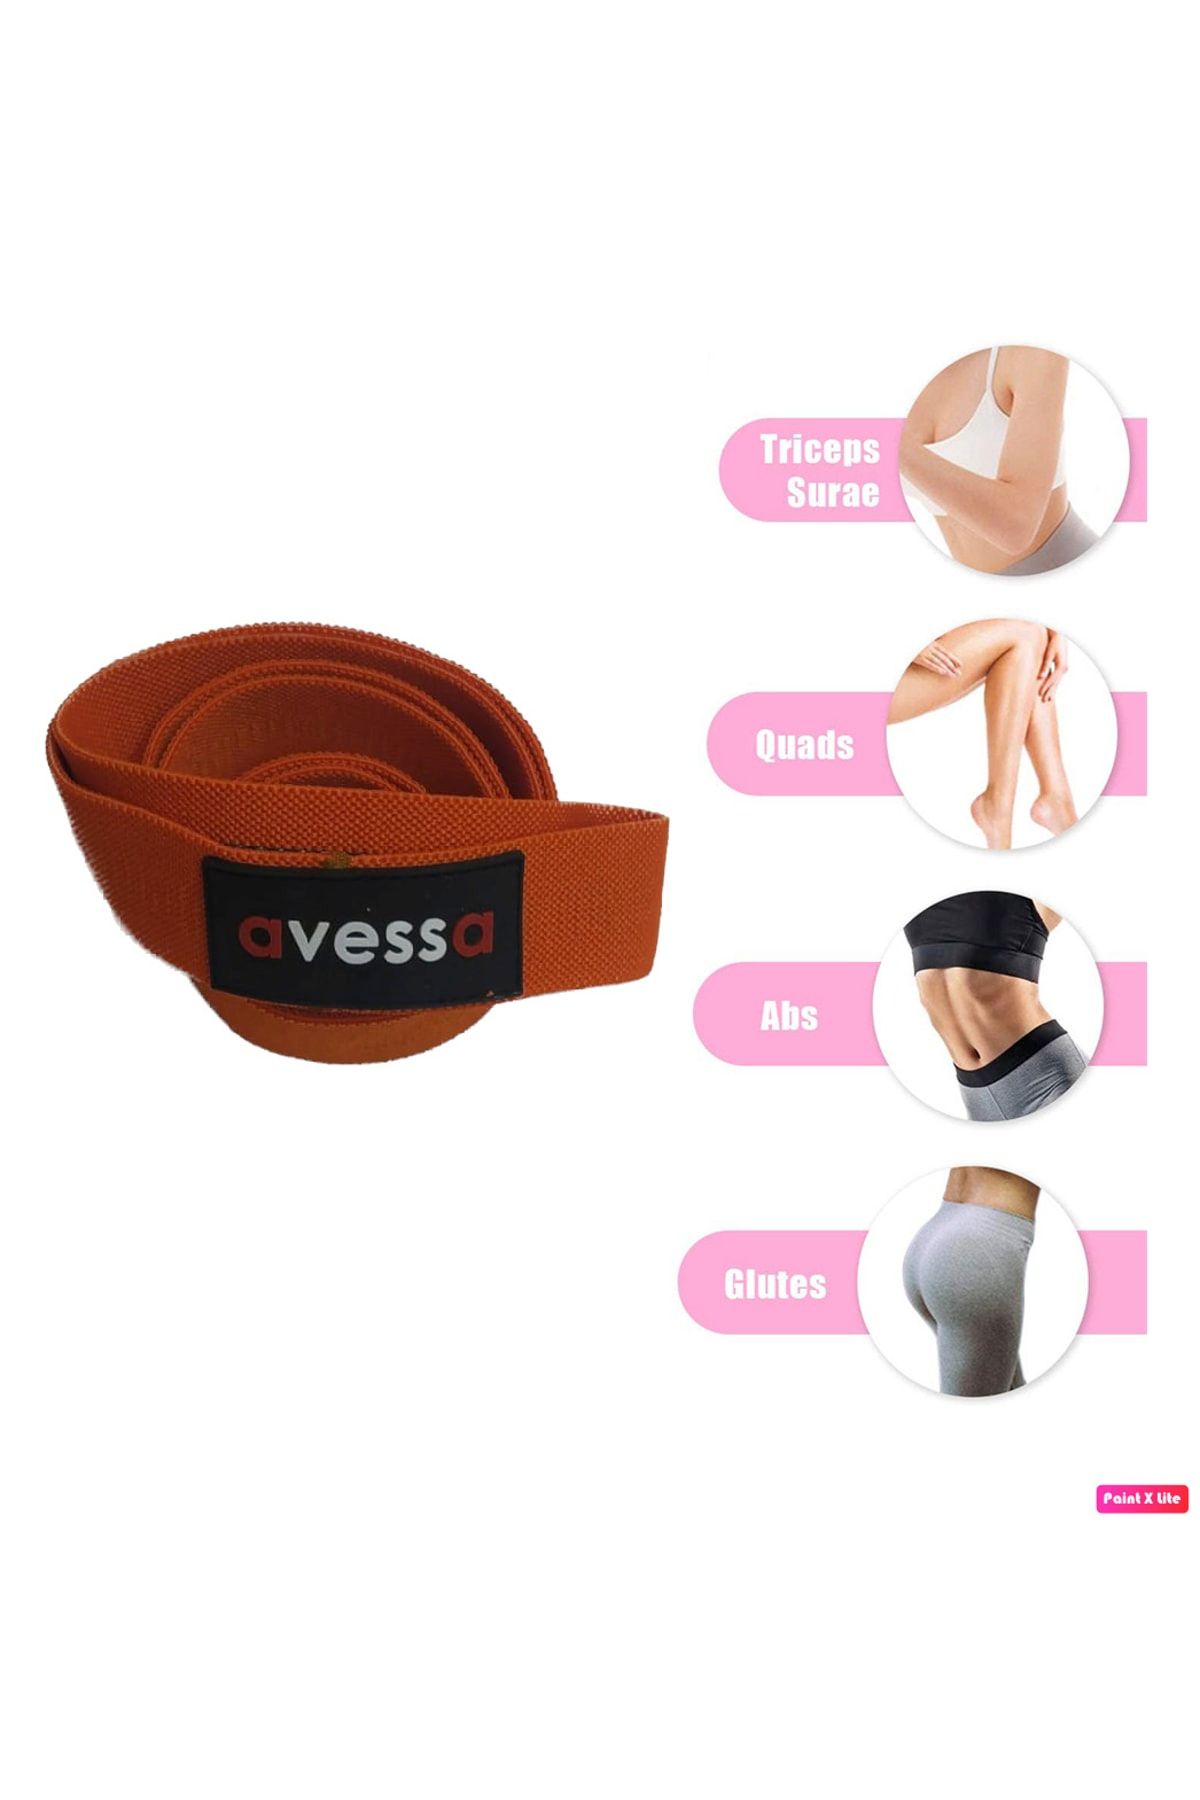 Avessa Lpb-100 Örme Güç Bandı Kalça Ve Bacak Güçlendirici Esneklik Kazandırıcı Yoga Direnç Lastiği